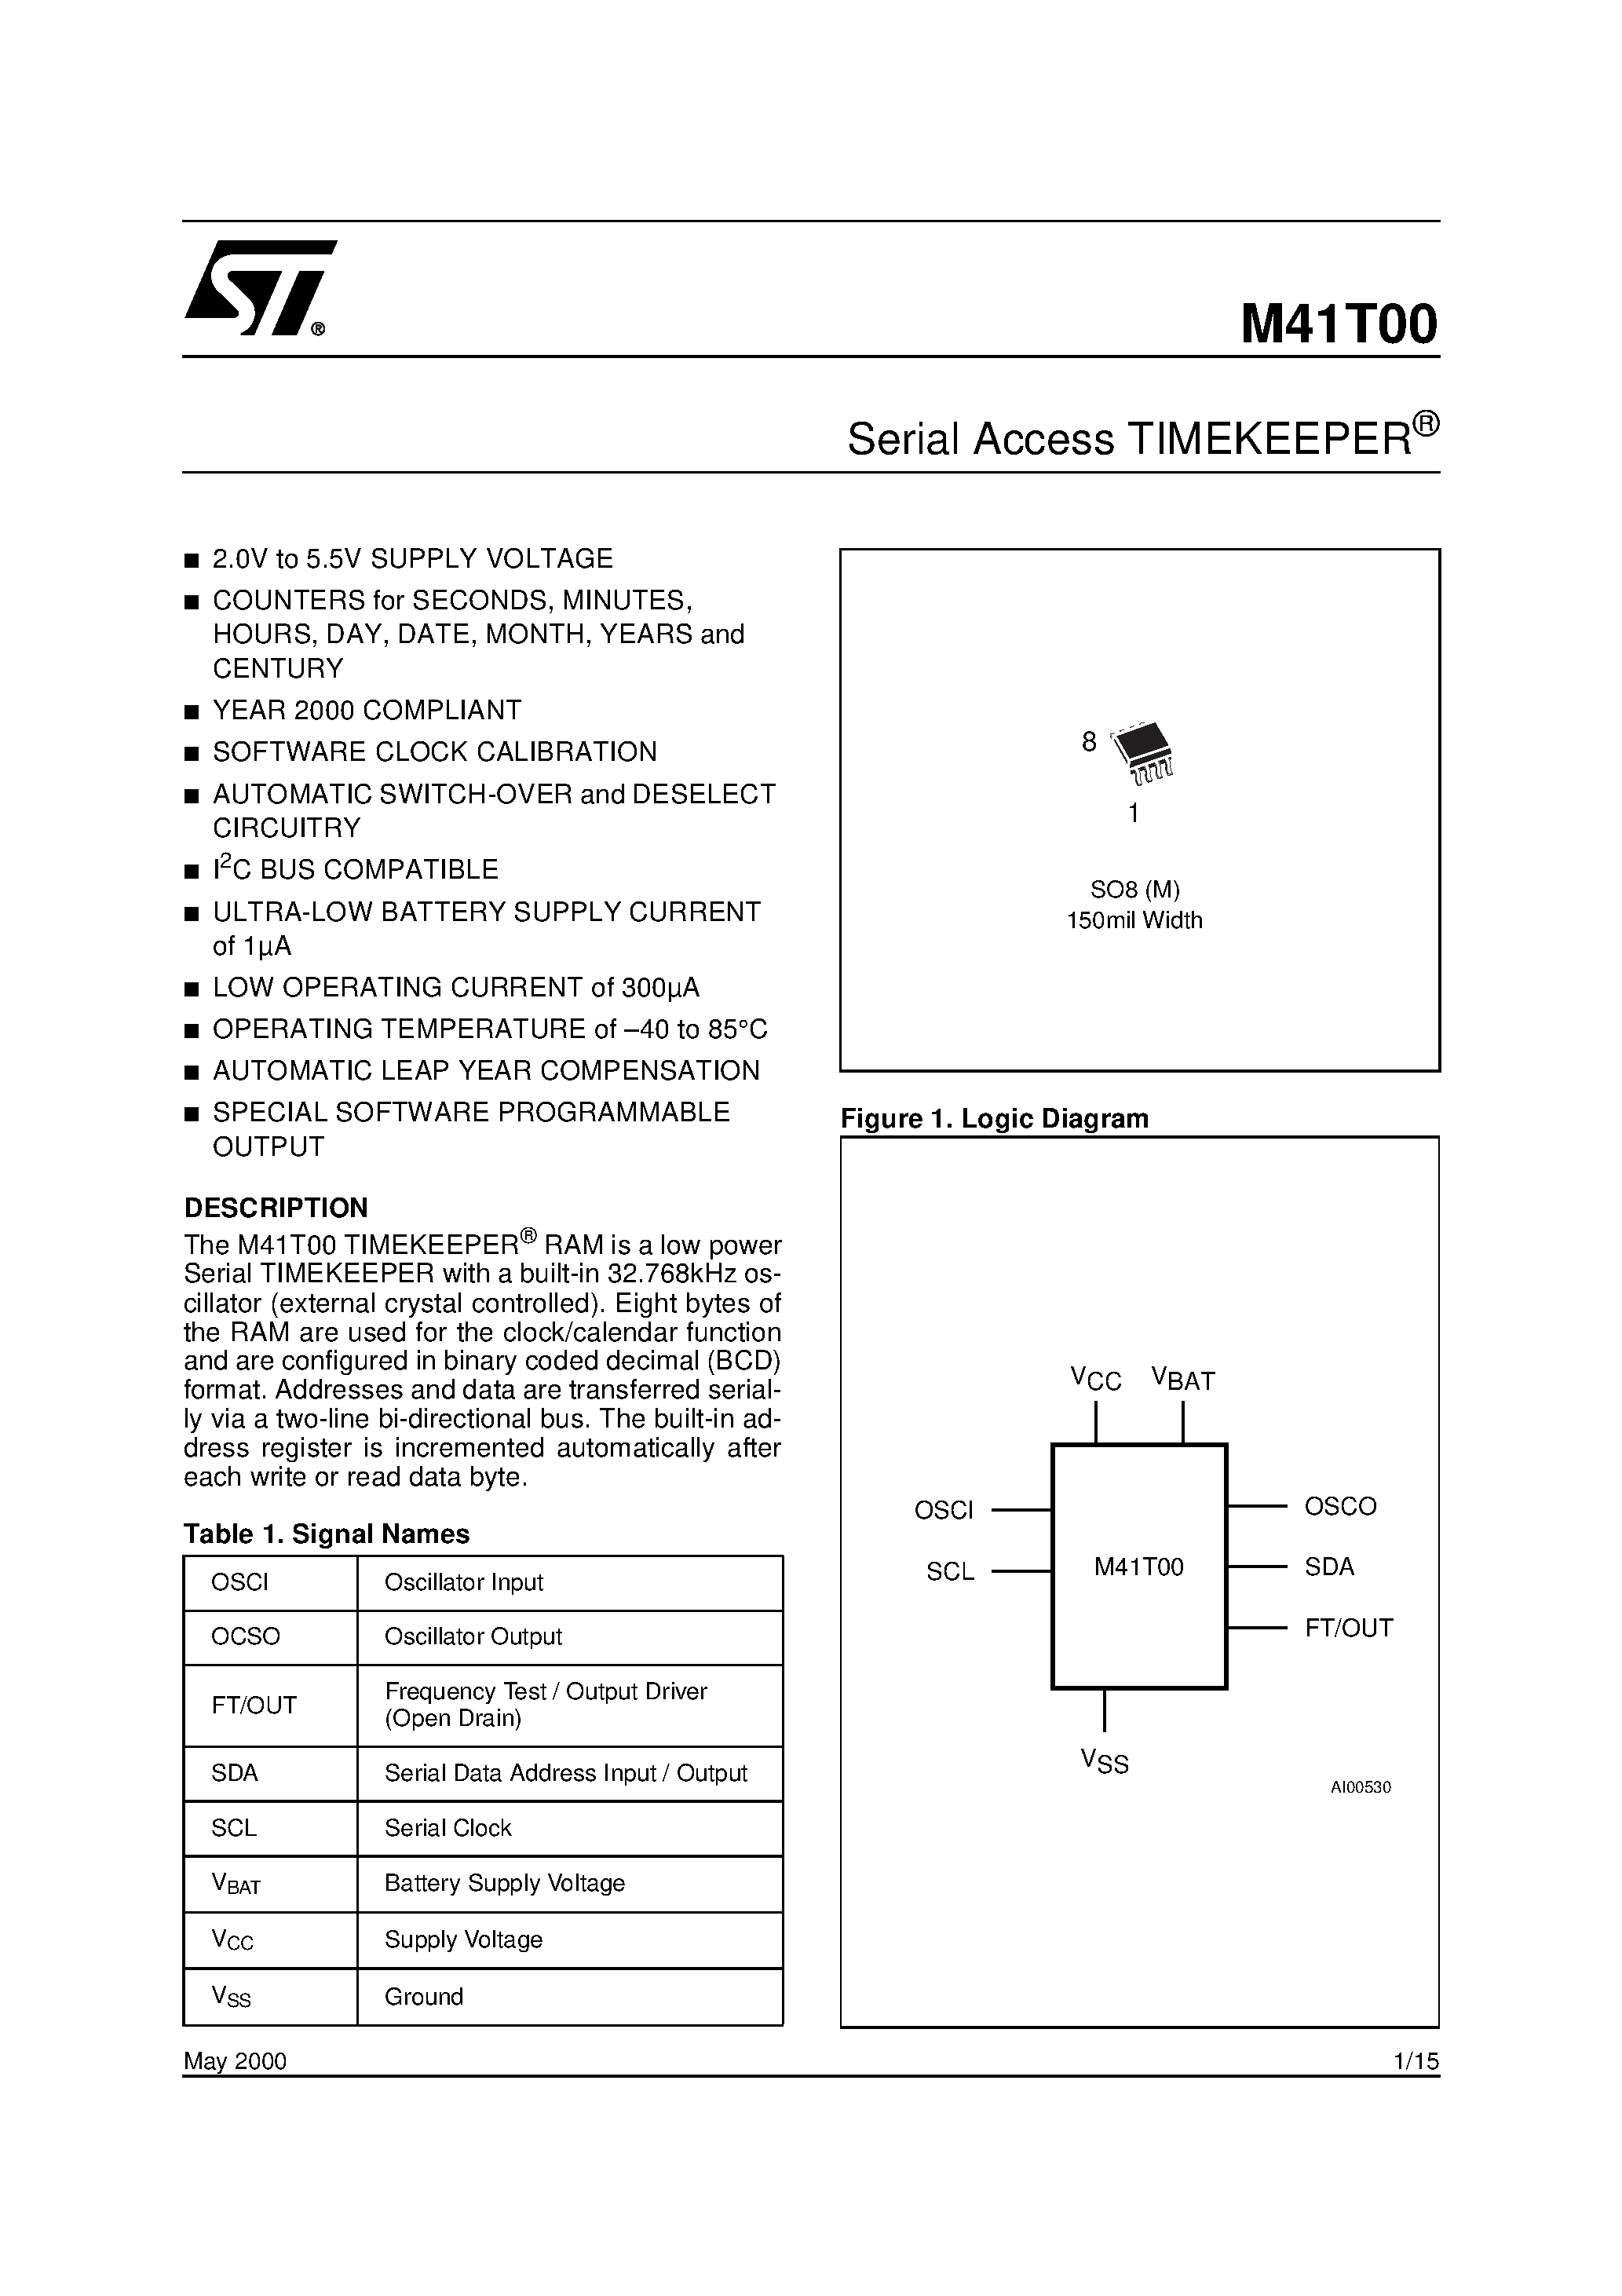 Даташит M41TM6 - 512 bit 64b x8 Serial Access TIMEKEEPER SRAM страница 1